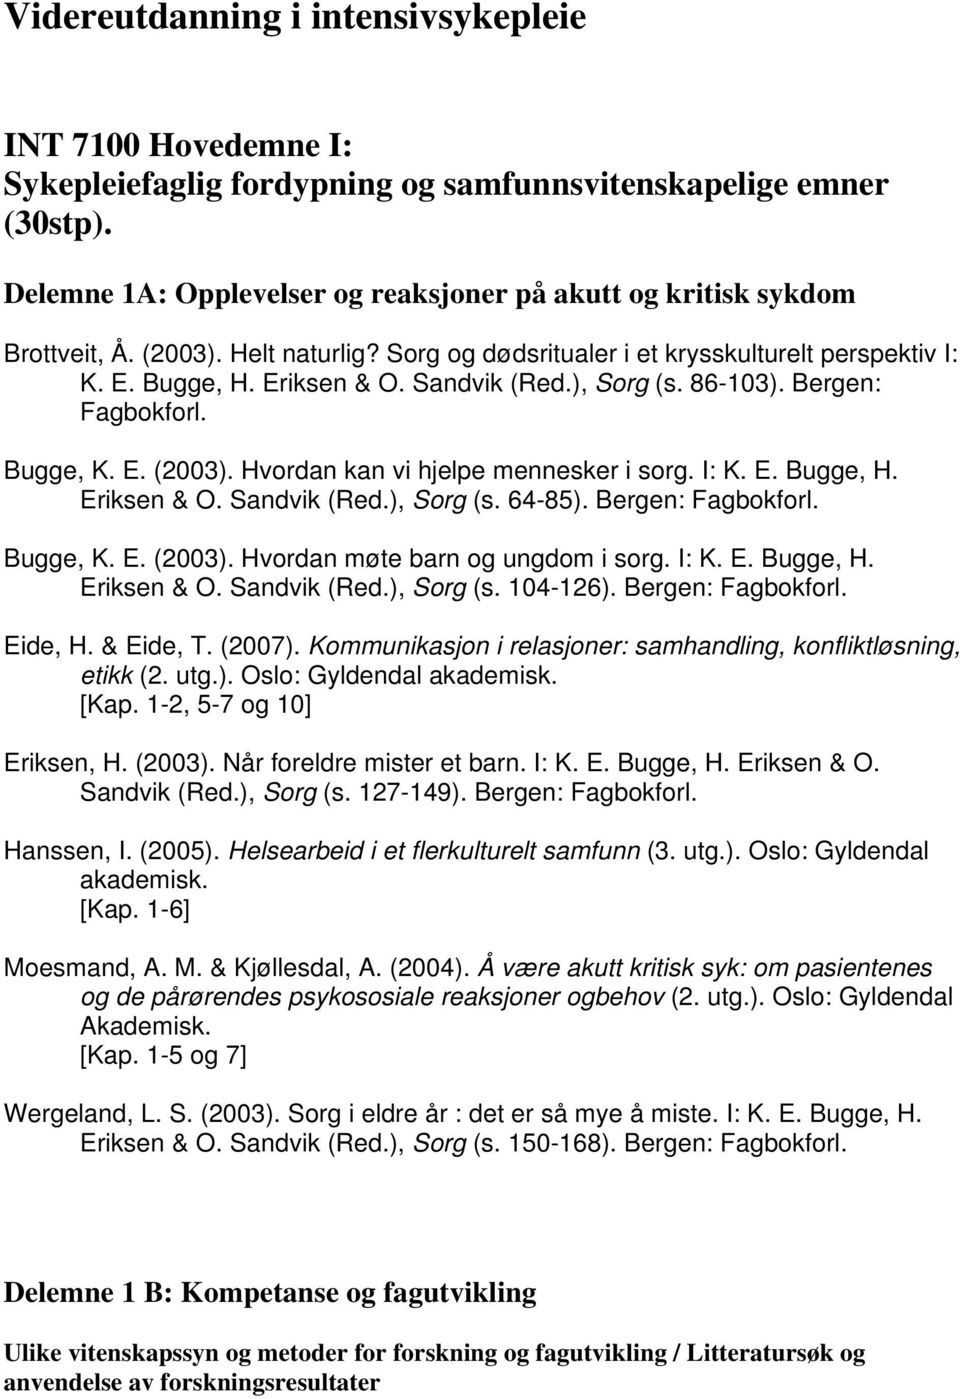 ), Sorg (s. 86-103). Bergen: Fagbokforl. Bugge, K. E. (2003). Hvordan kan vi hjelpe mennesker i sorg. I: K. E. Bugge, H. Eriksen & O. Sandvik (Red.), Sorg (s. 64-85). Bergen: Fagbokforl. Bugge, K. E. (2003). Hvordan møte barn og ungdom i sorg.